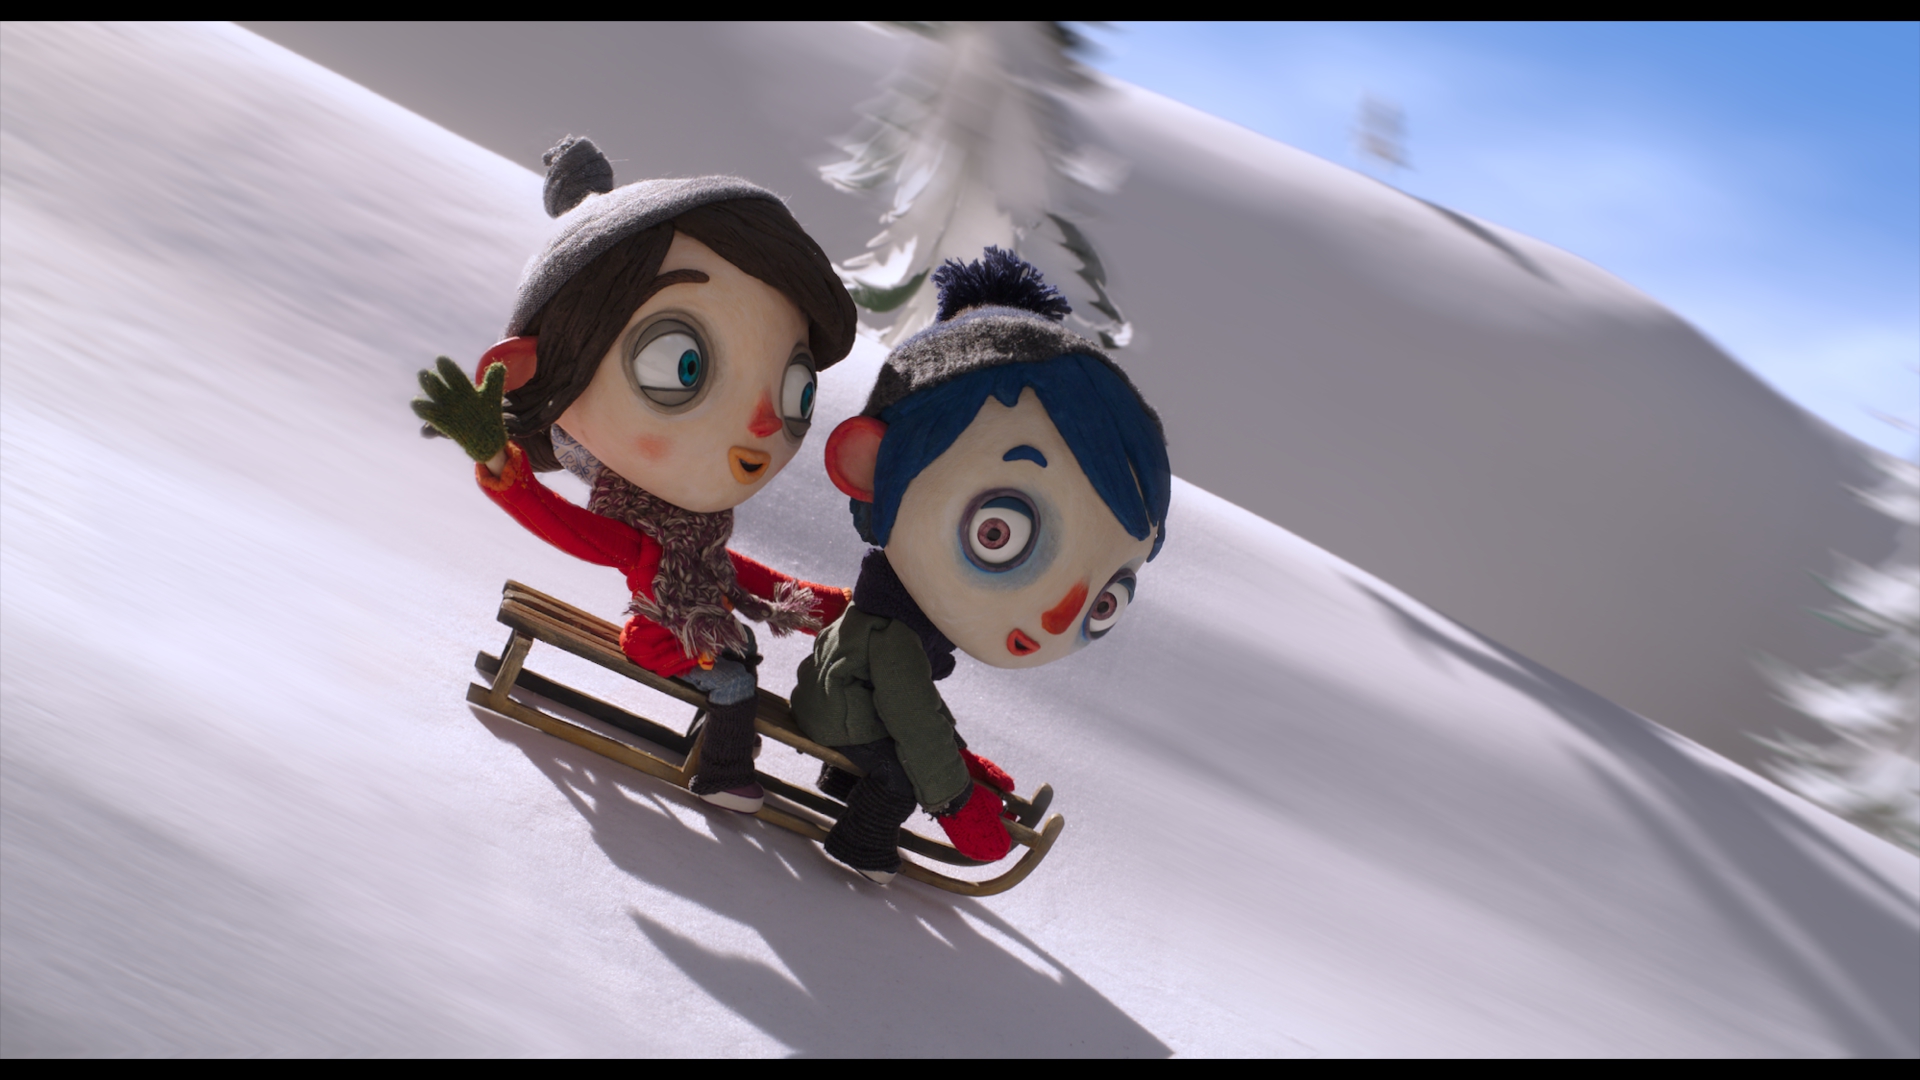 Der blauhaarige Junge Zucchini und seine Freundin Camille rodeln auf einem Holzschlitten freudig einen schneebedeckten Abhang hinunter.